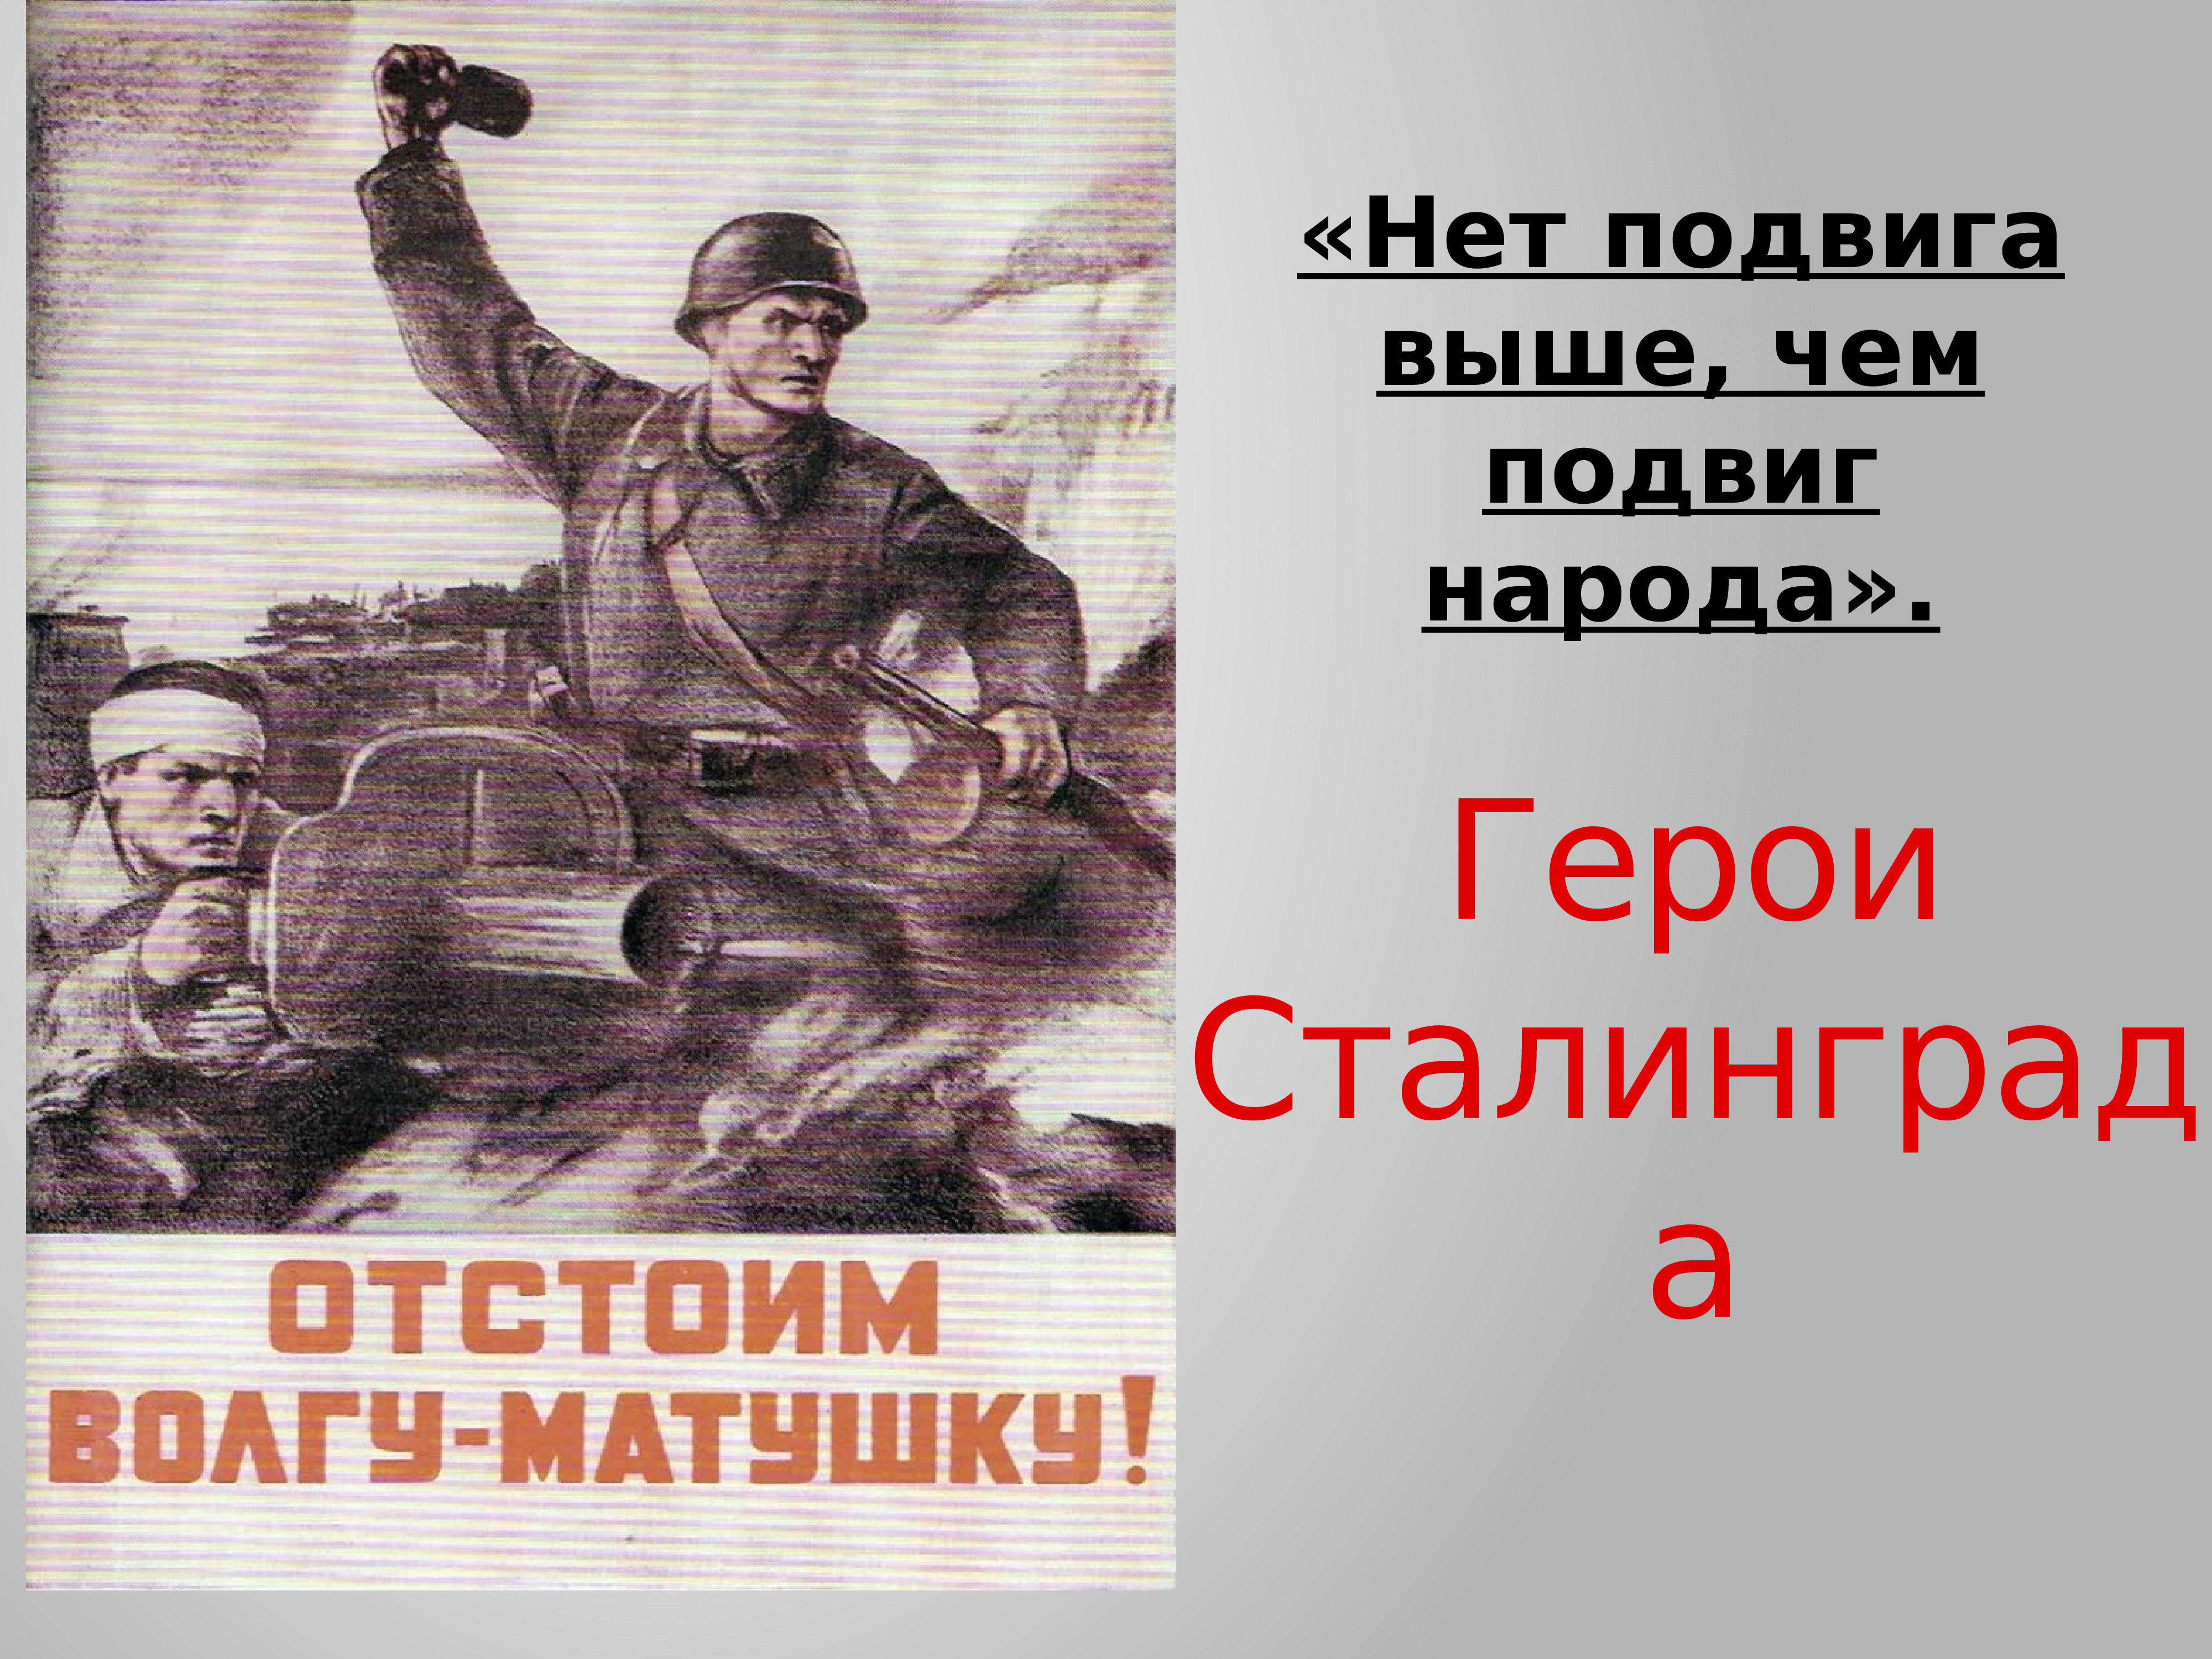 Плакат отстоим год. Отстоим Сталинград плакат. Сталинградская битва плакат. Плакат отстоим Волгу матушку. Плакаты посвященные Сталинградской битве.